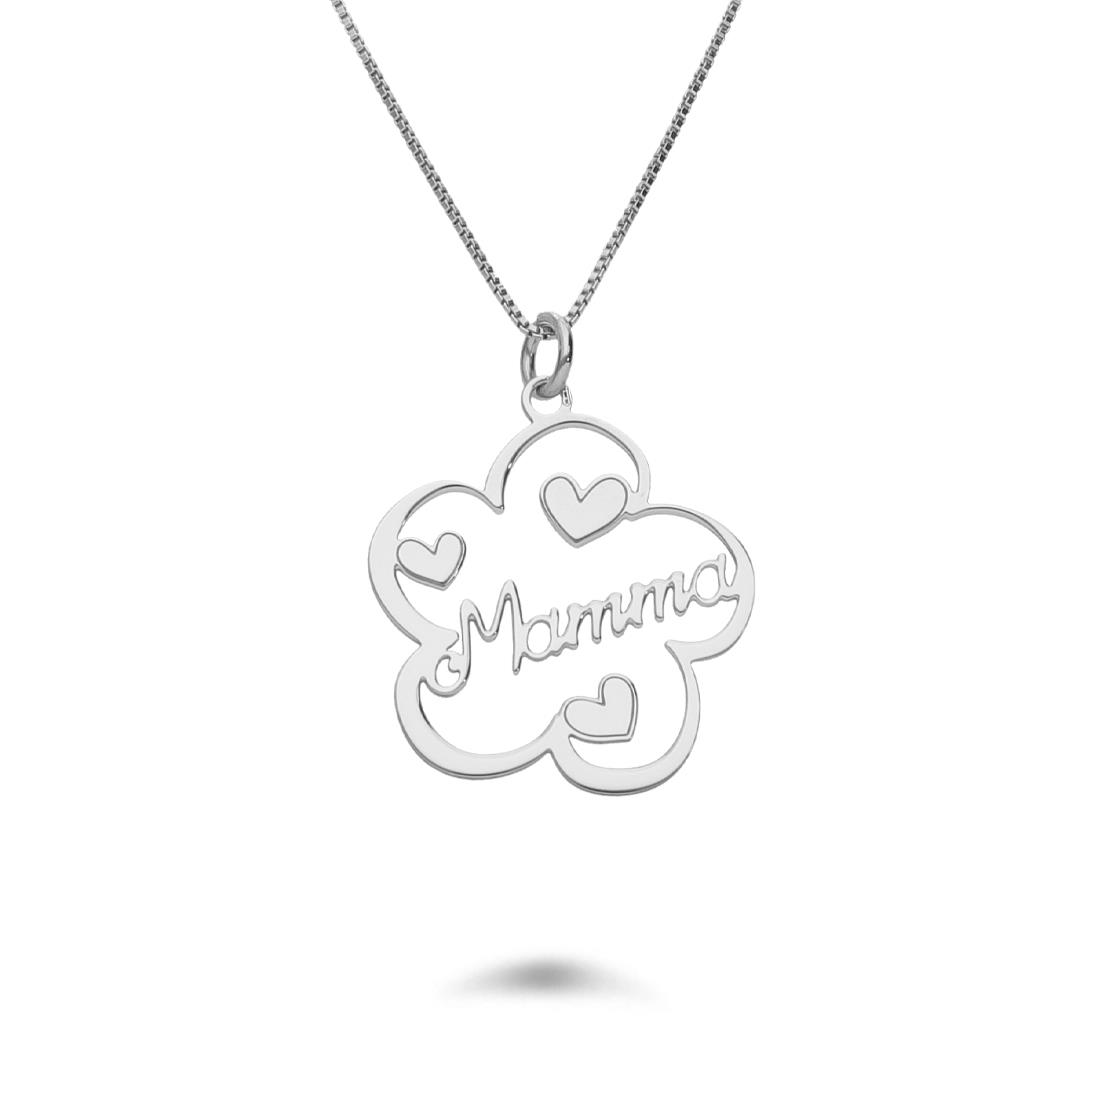 Rodaito silver necklace with flower-shaped pendant - DESIDERI PREZIOSI